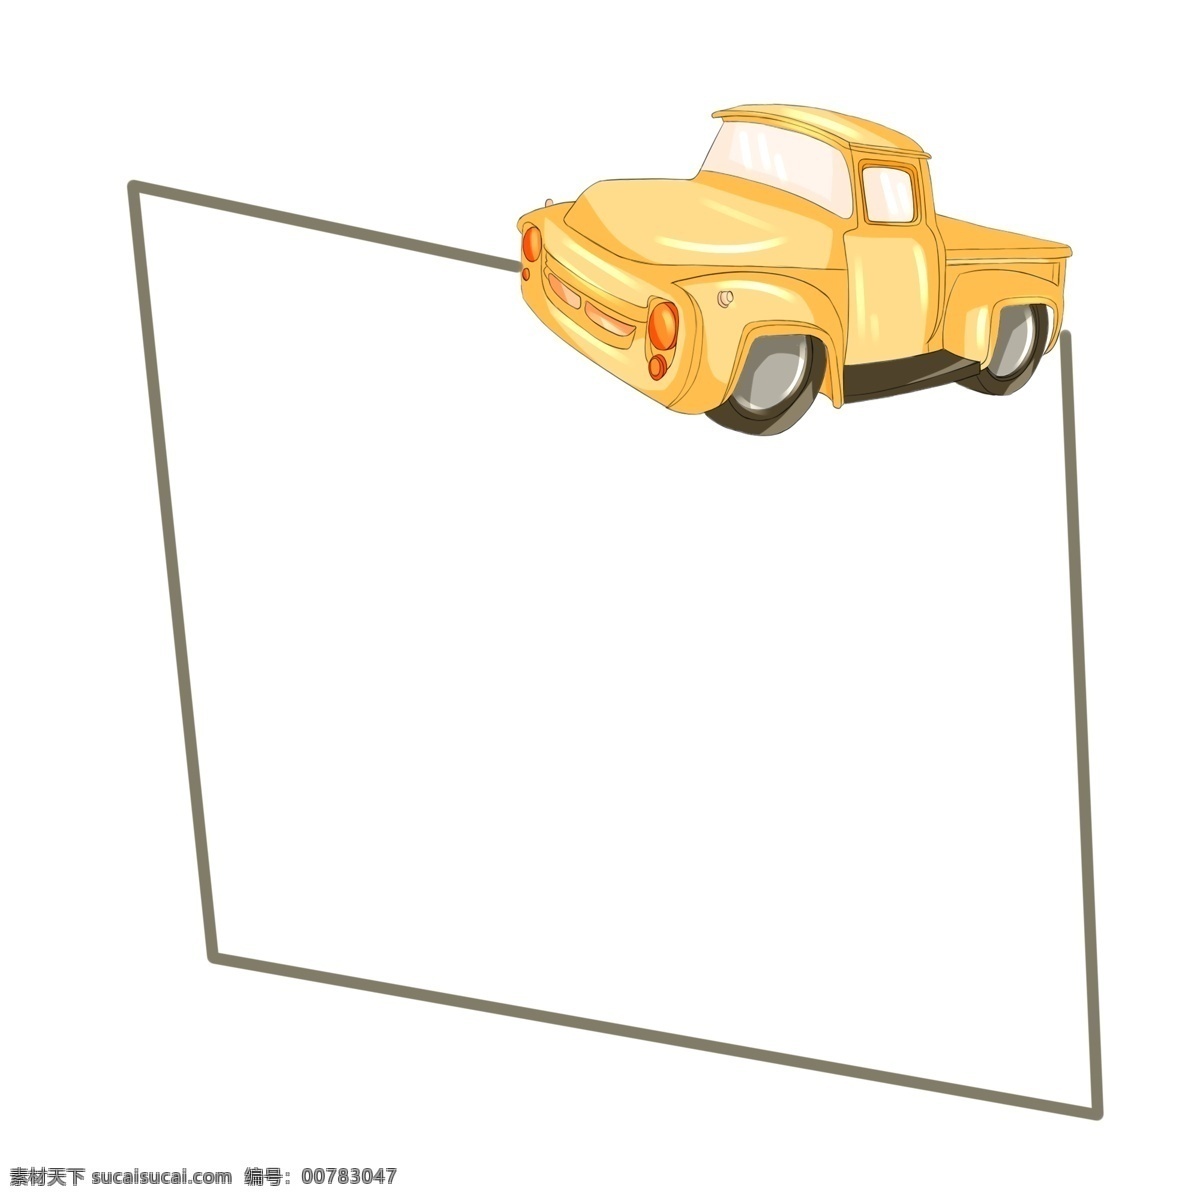 黄色 小 卡车 边框 插画 黄色小货车 黄色卡车 棕绿色边框 货车 交通工具 卡通边框 皮卡车边框